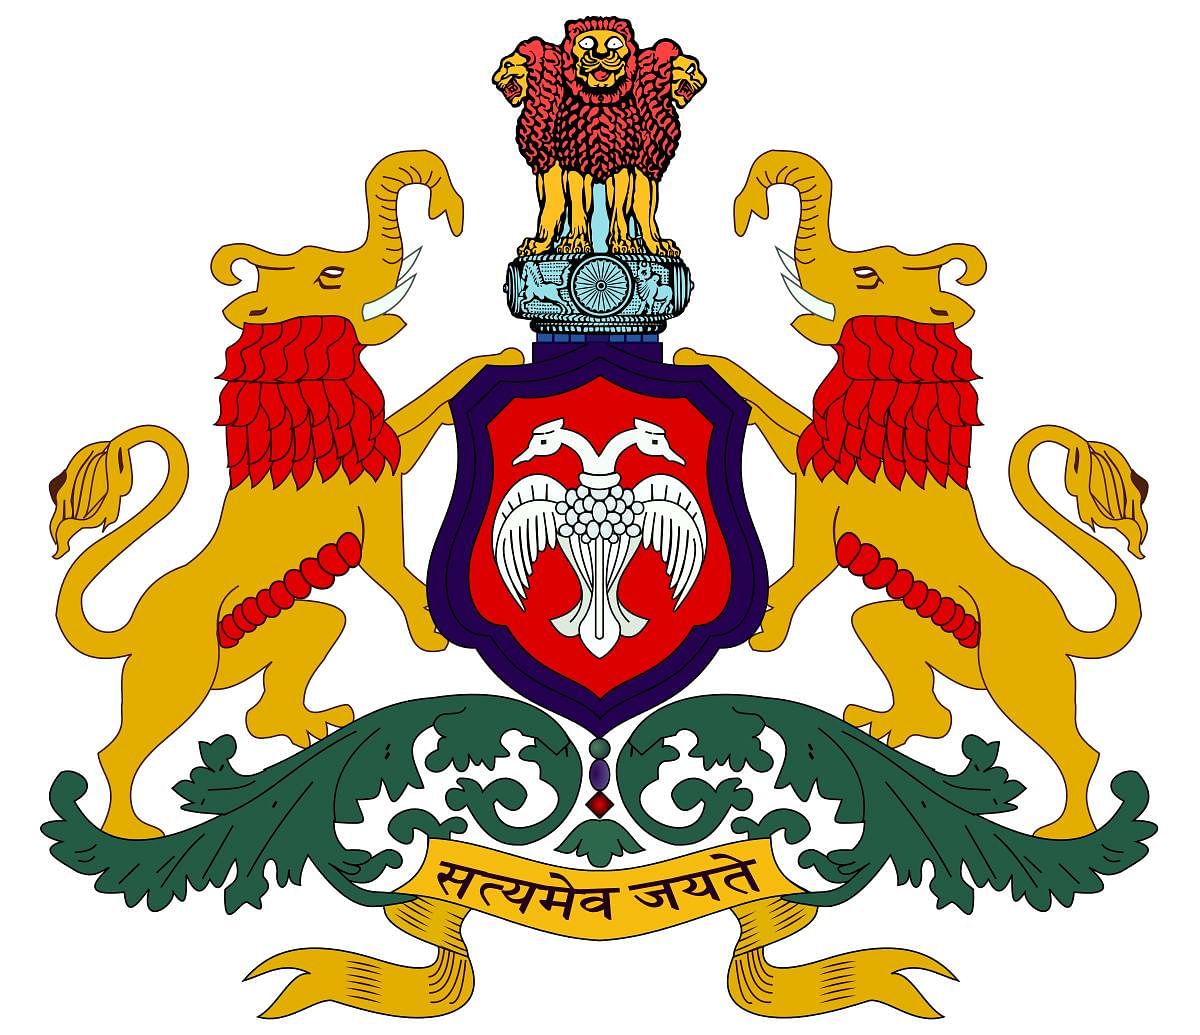 Emblem with gandaberunda symbol 